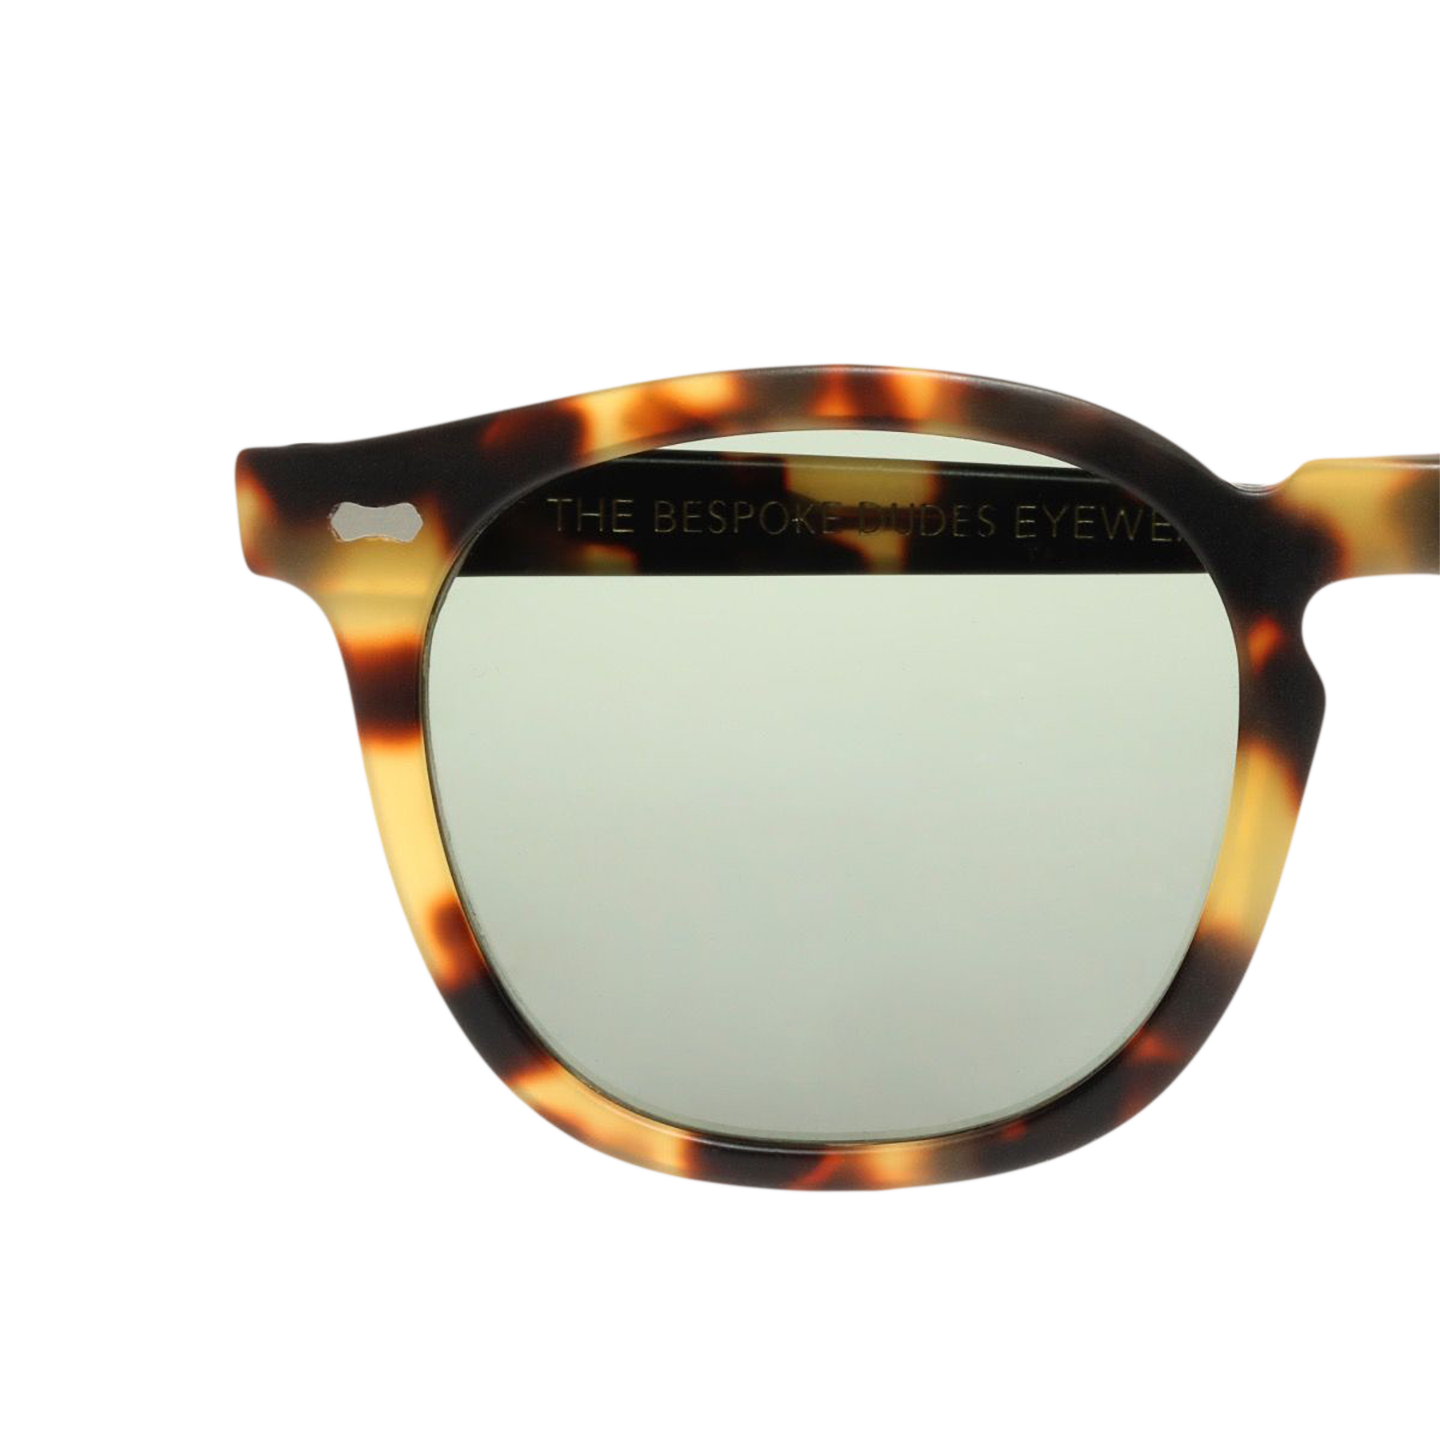 A pair of Twill Light Tortoise Bottle Green Lenses 49mm sunglasses from The Bespoke Dudes.